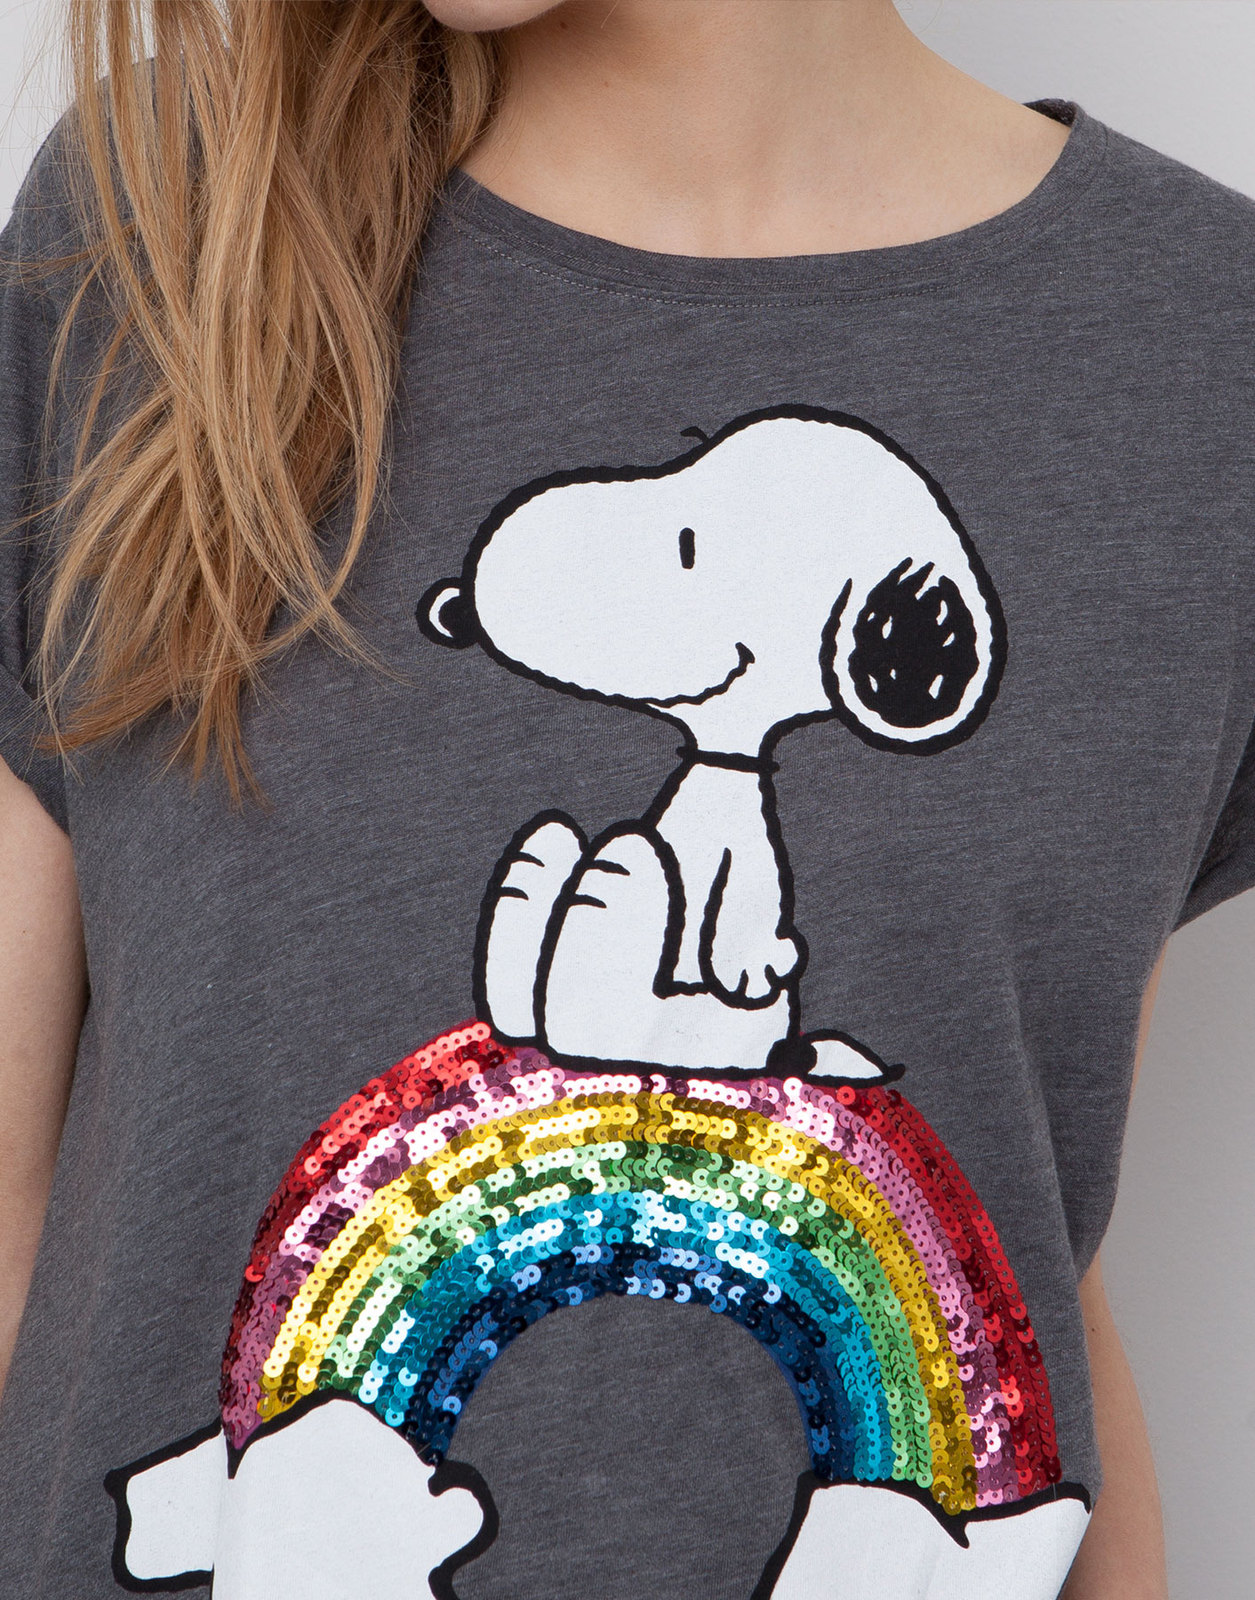 Pull and Bear flitteres szivárványos Snoopy póló 2015.02.22 fotója